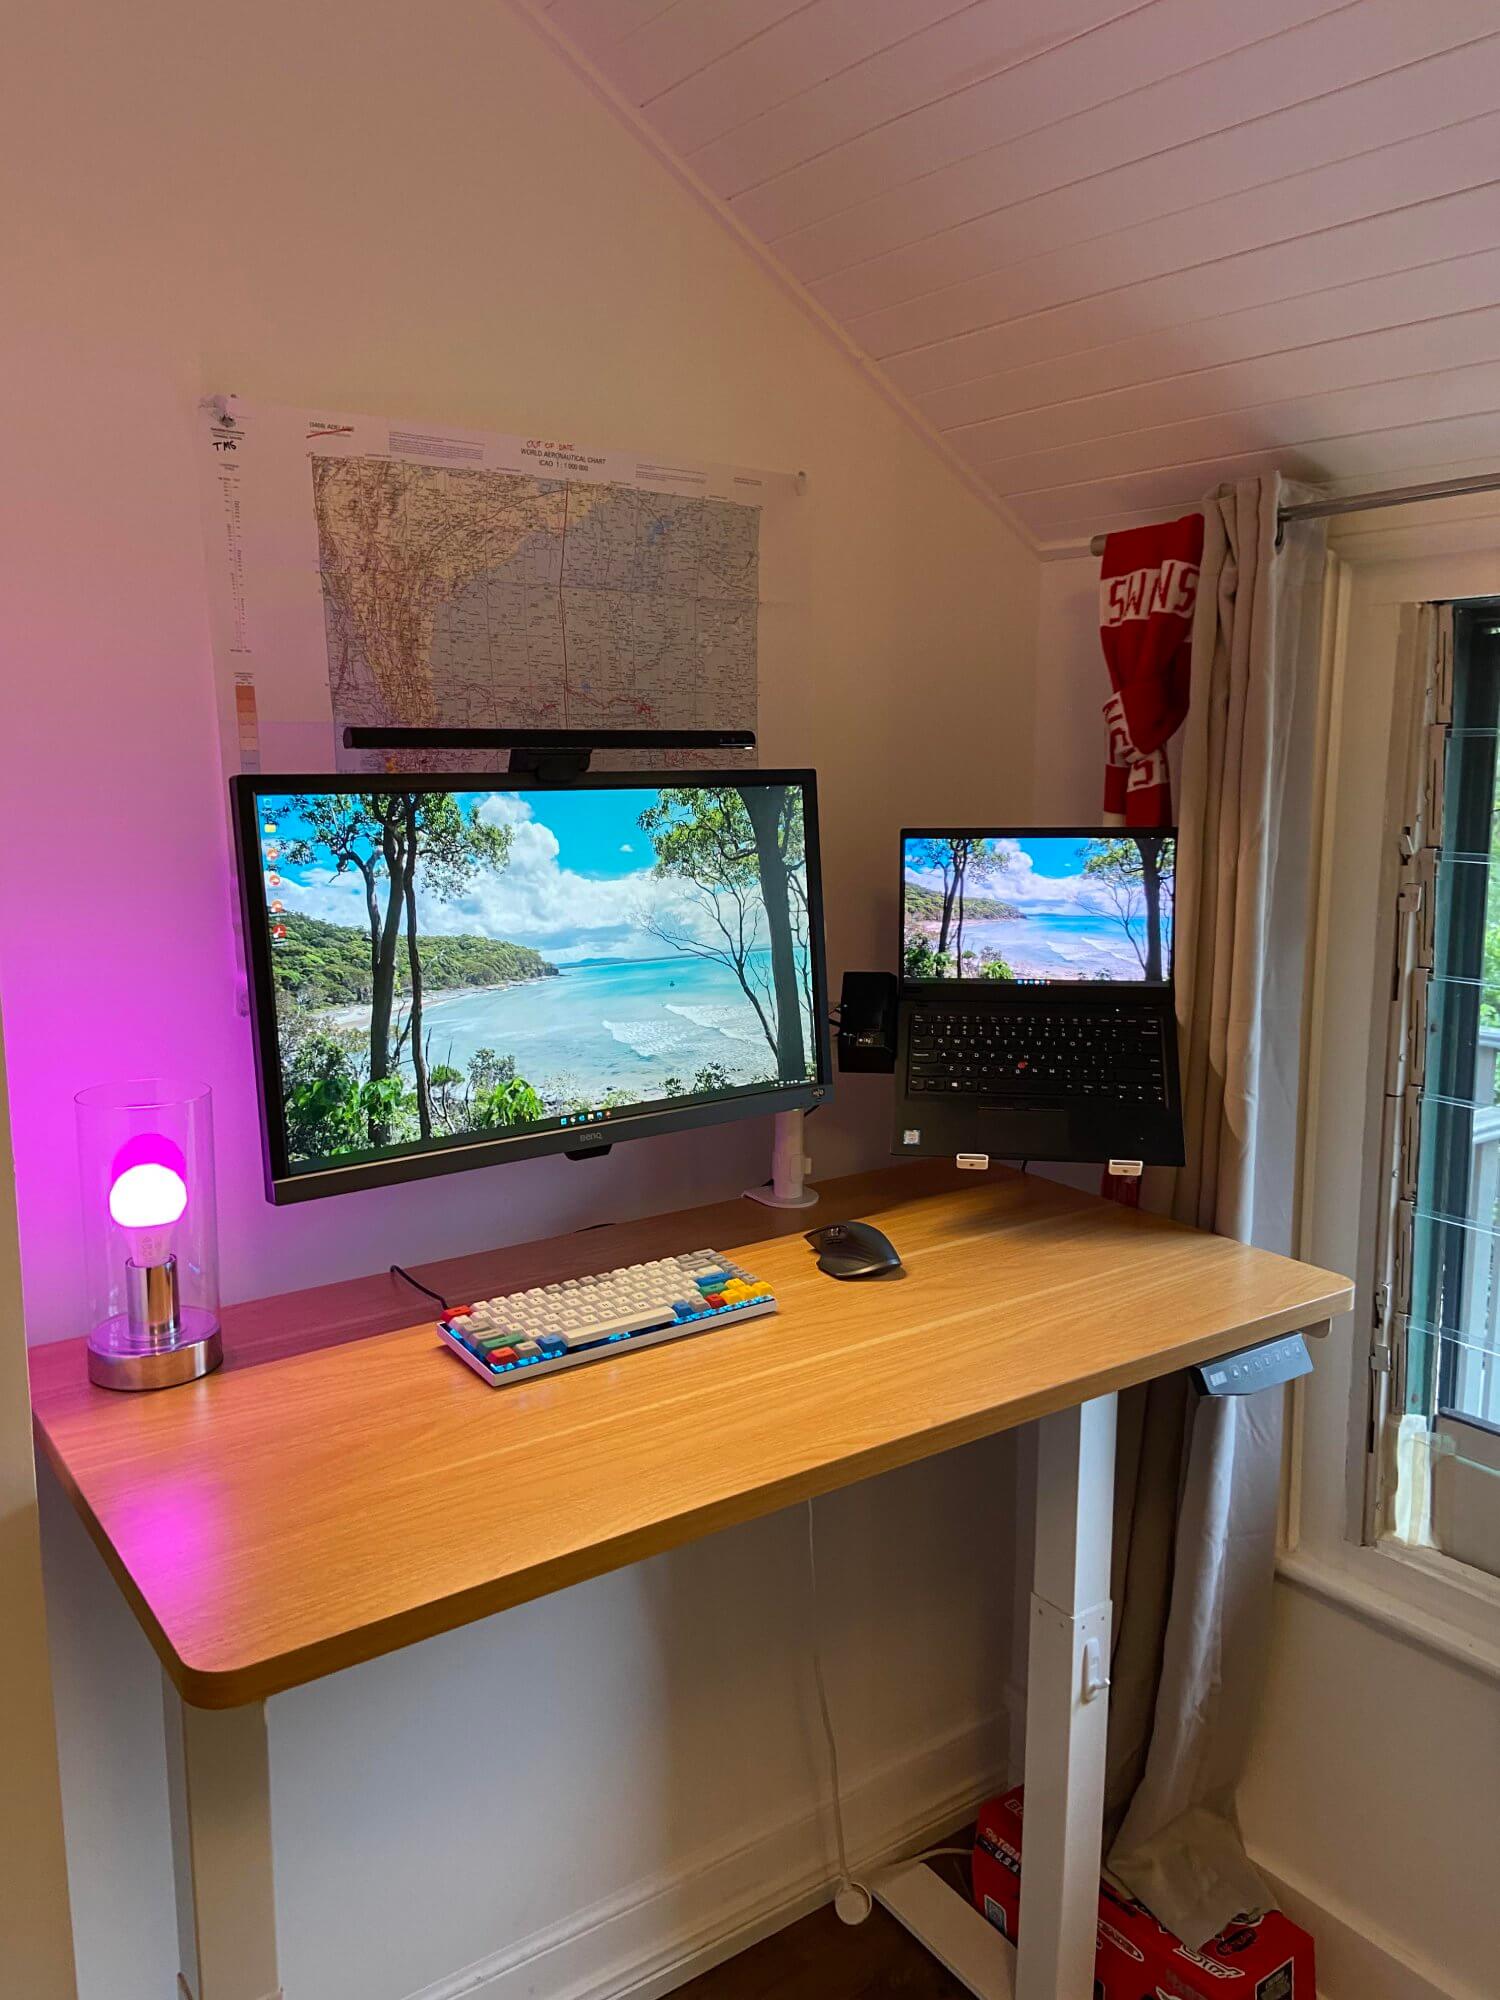 A home office setup featuring an Artiss standing desk